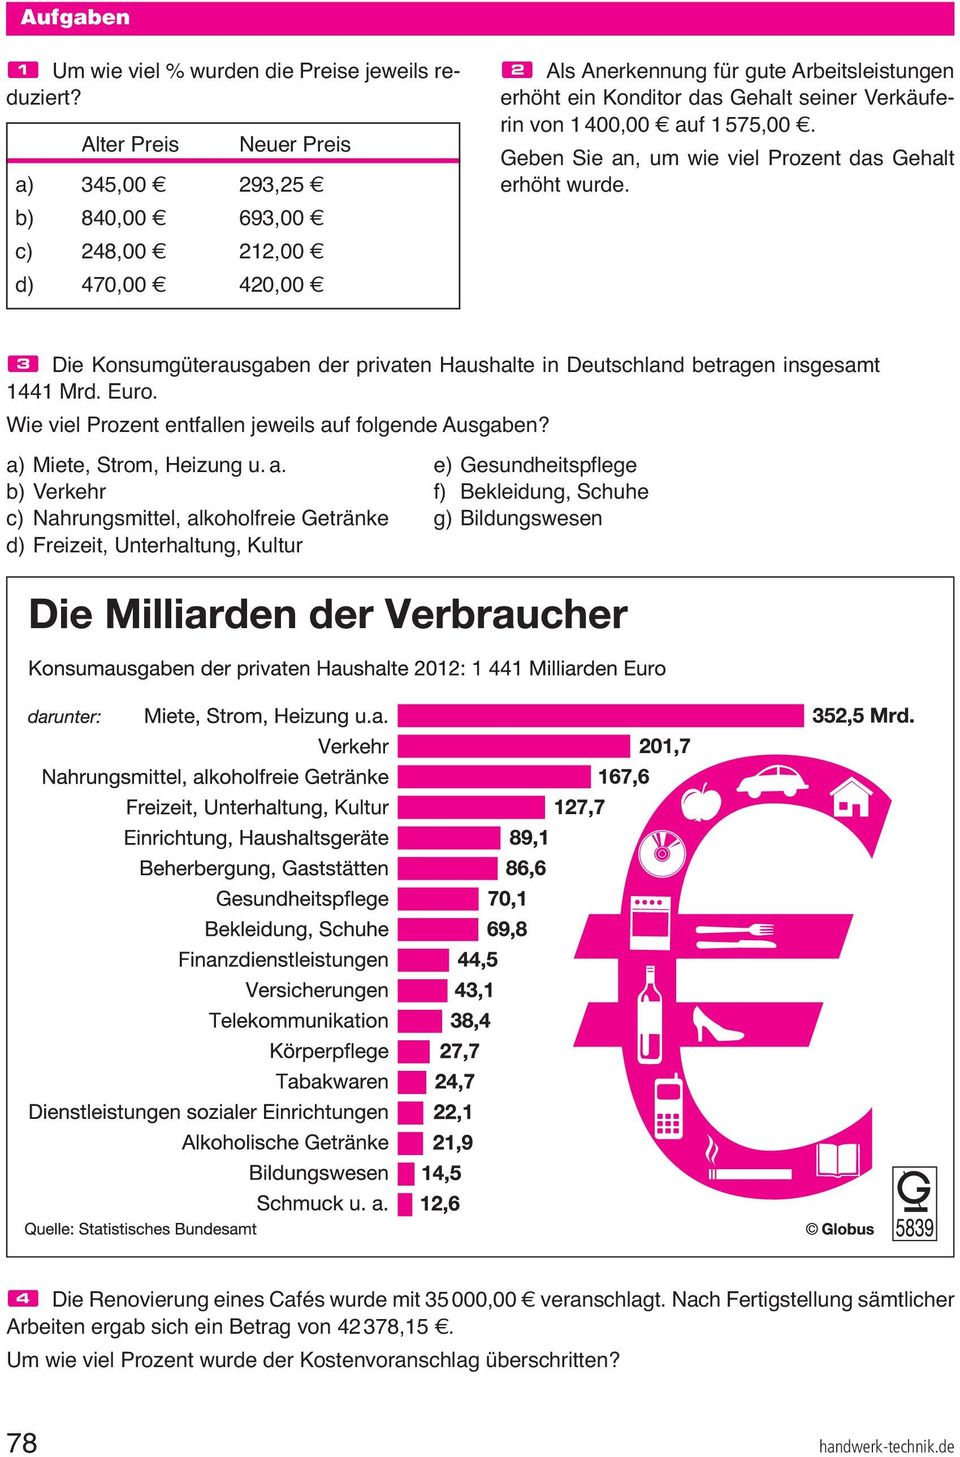 Verkäuferin von 1 400,00 $ auf 1 575,00 $. Geben Sie an, um wie viel Prozent das Gehalt erhöht wurde. # Die Konsumgüterausgaben der privaten Haushalte in Deutschland betragen insgesamt 1441 Mrd. Euro.